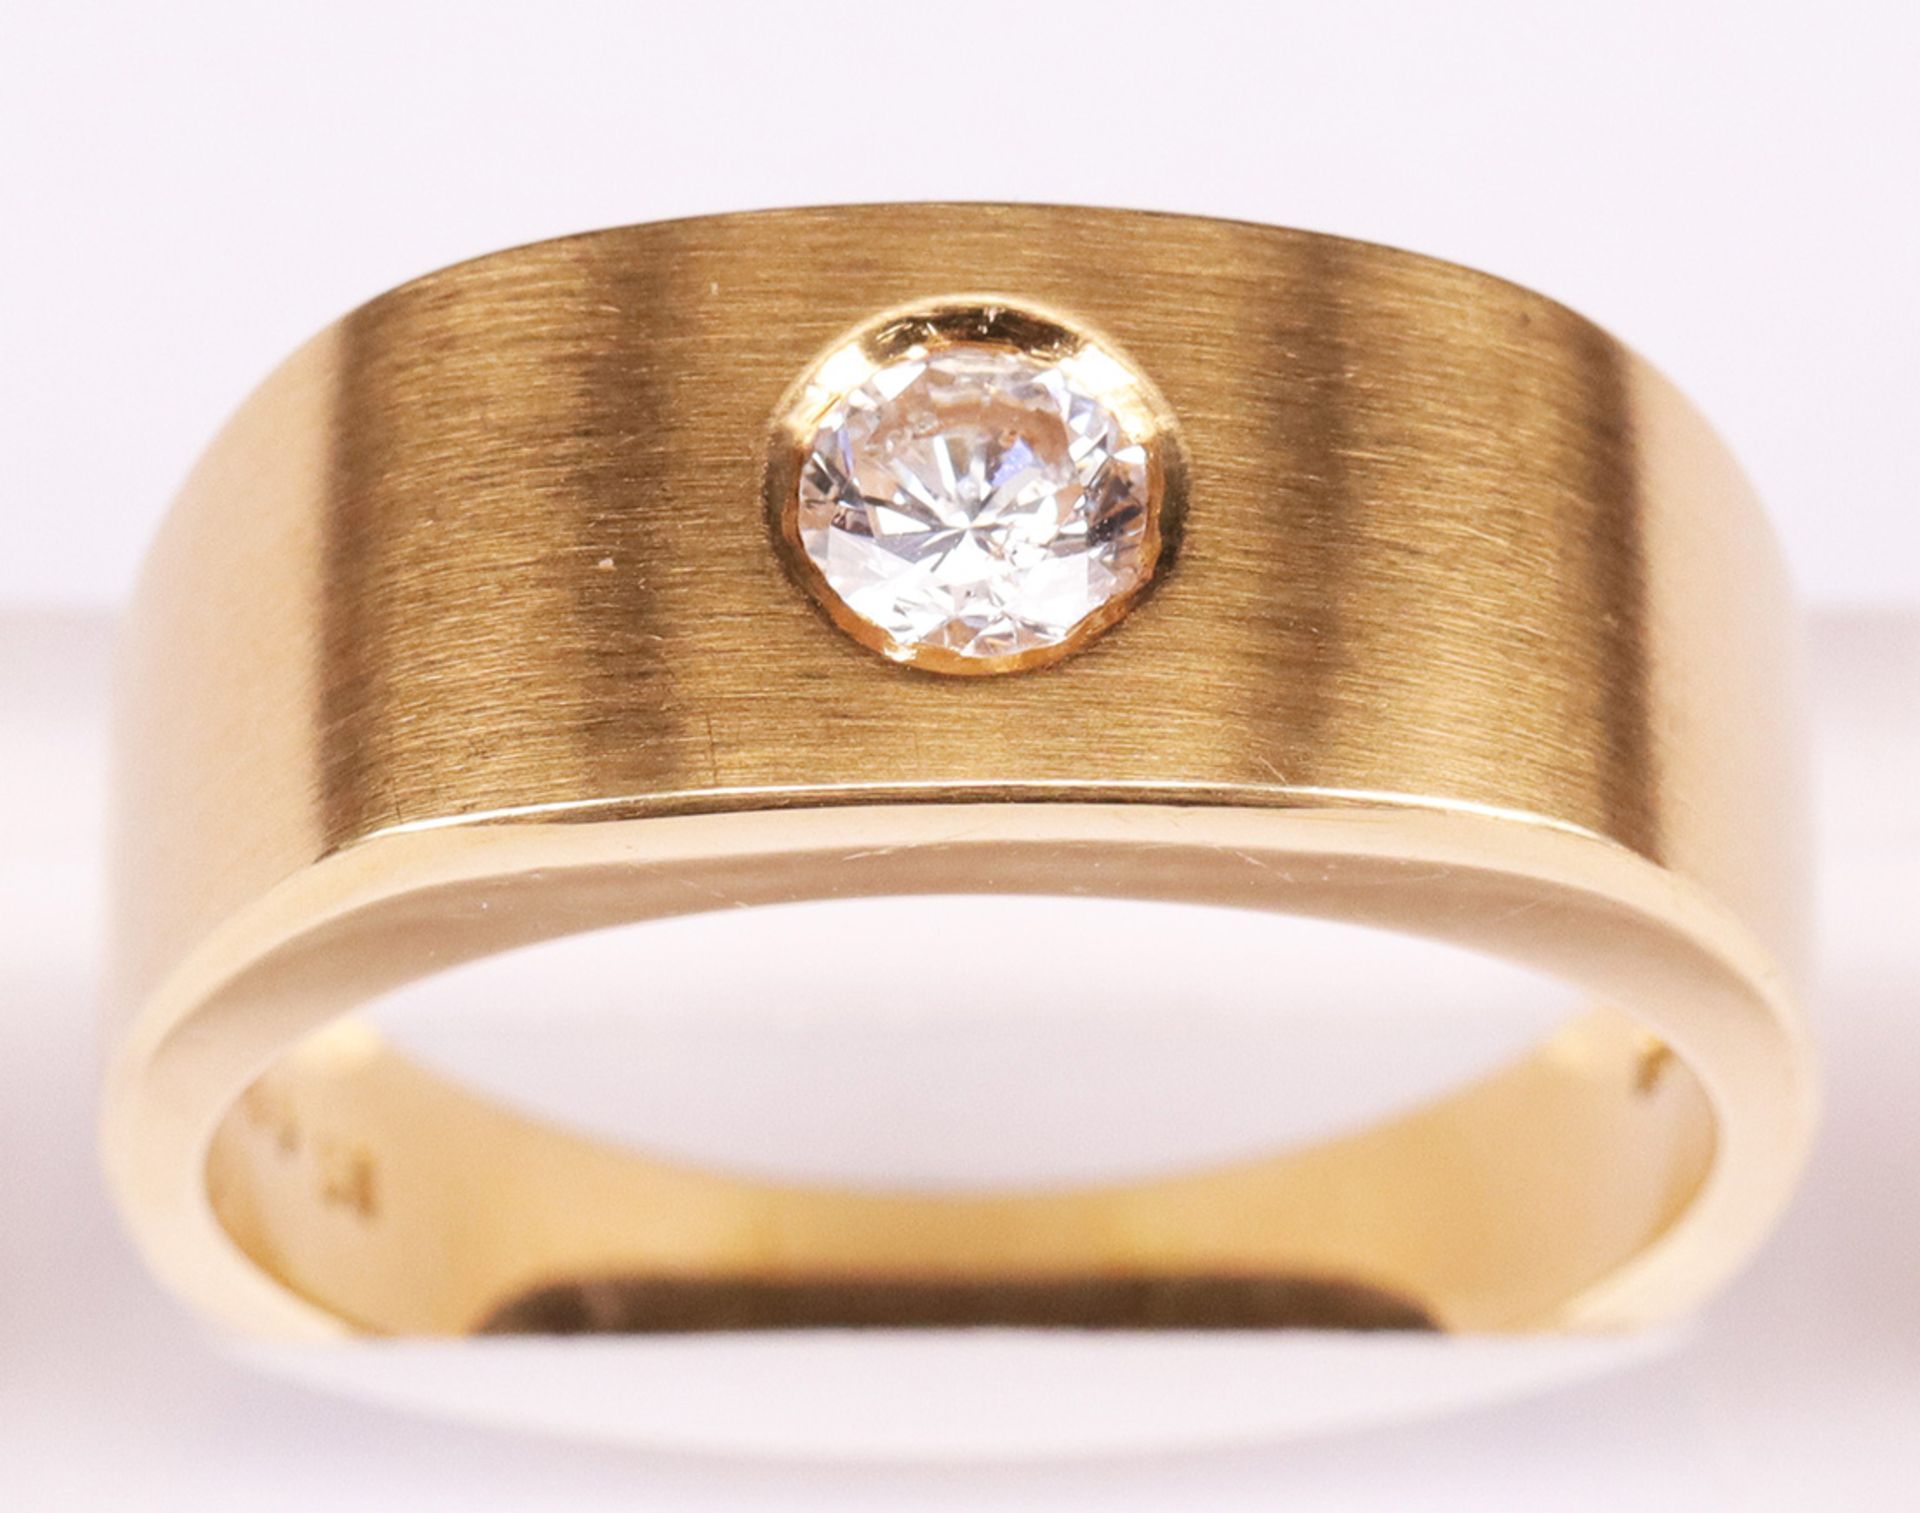 Breiter Ring, 750er GG, Brilliant 0,49 ct, si-p1, RG65, 17,32 g - Bild 5 aus 5